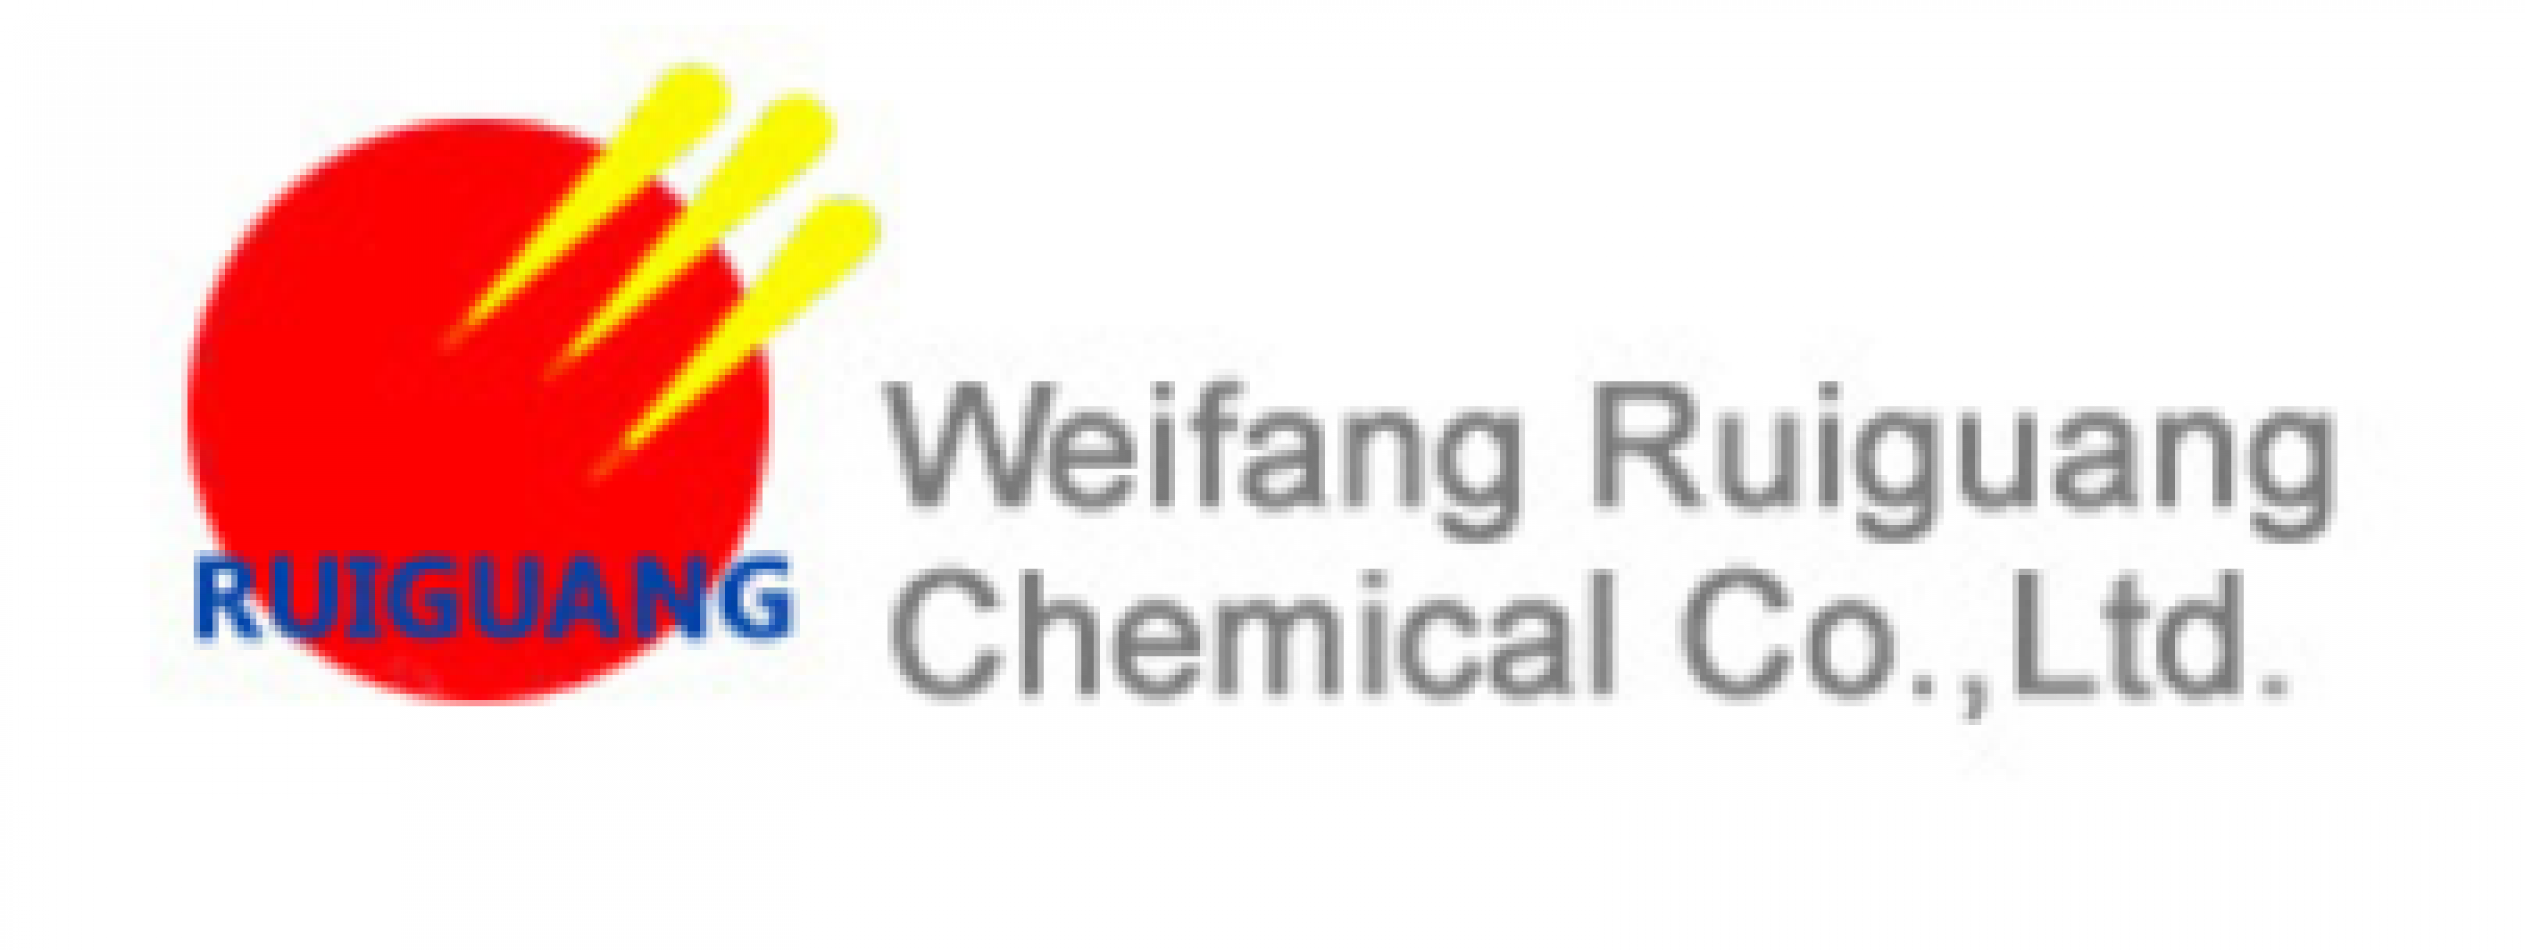 WEIFANG RUIGUANG CHEMICAL CO., LTD.